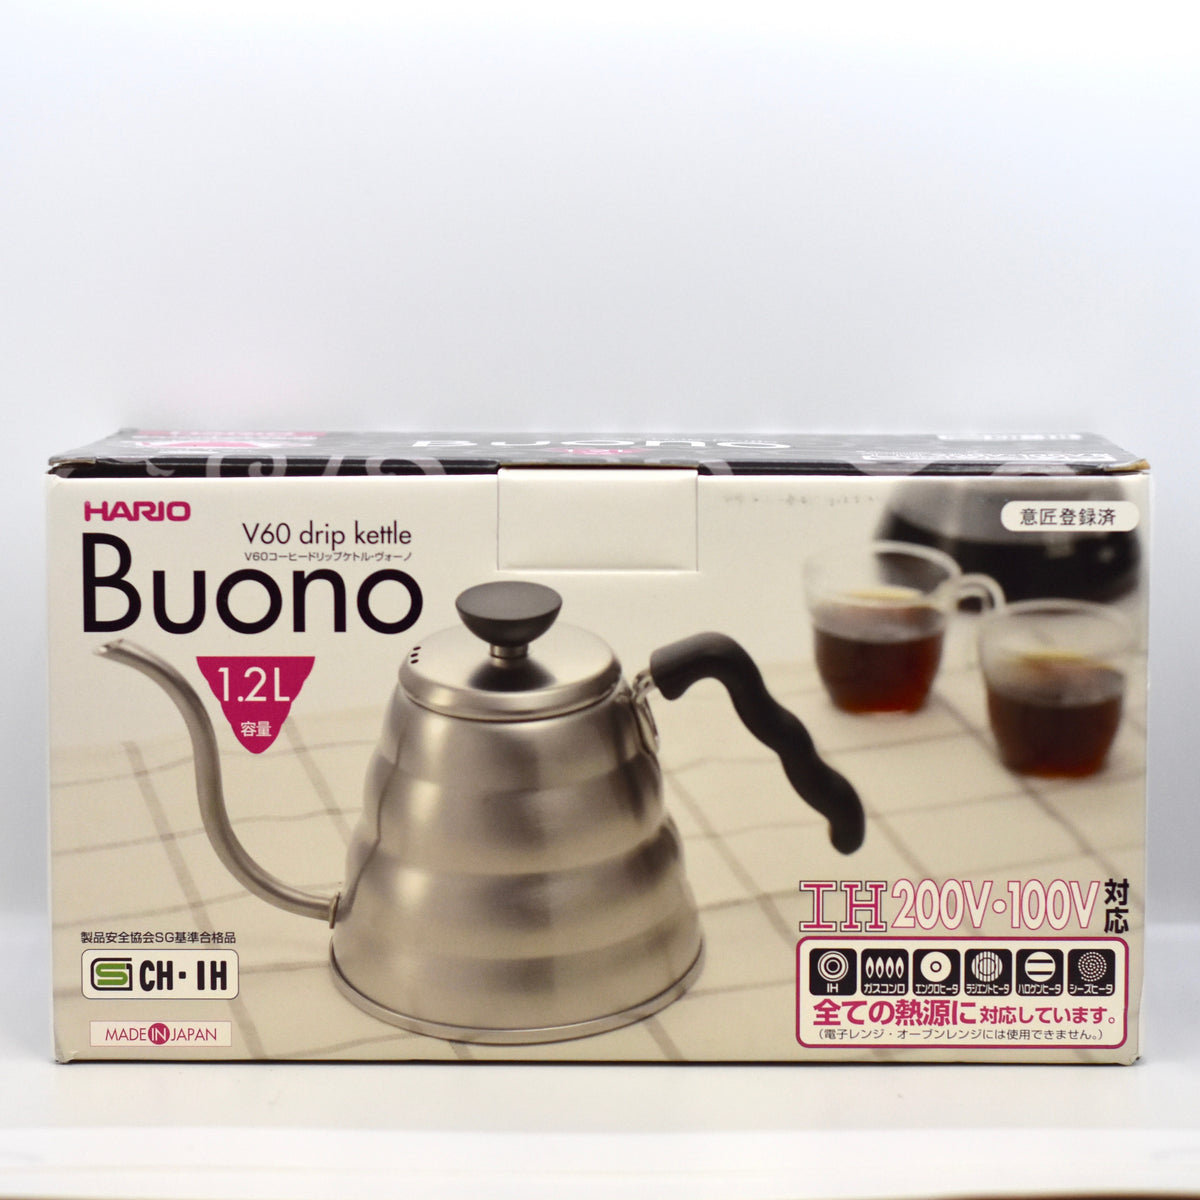 Hario V60 Buono Coffee Kettle